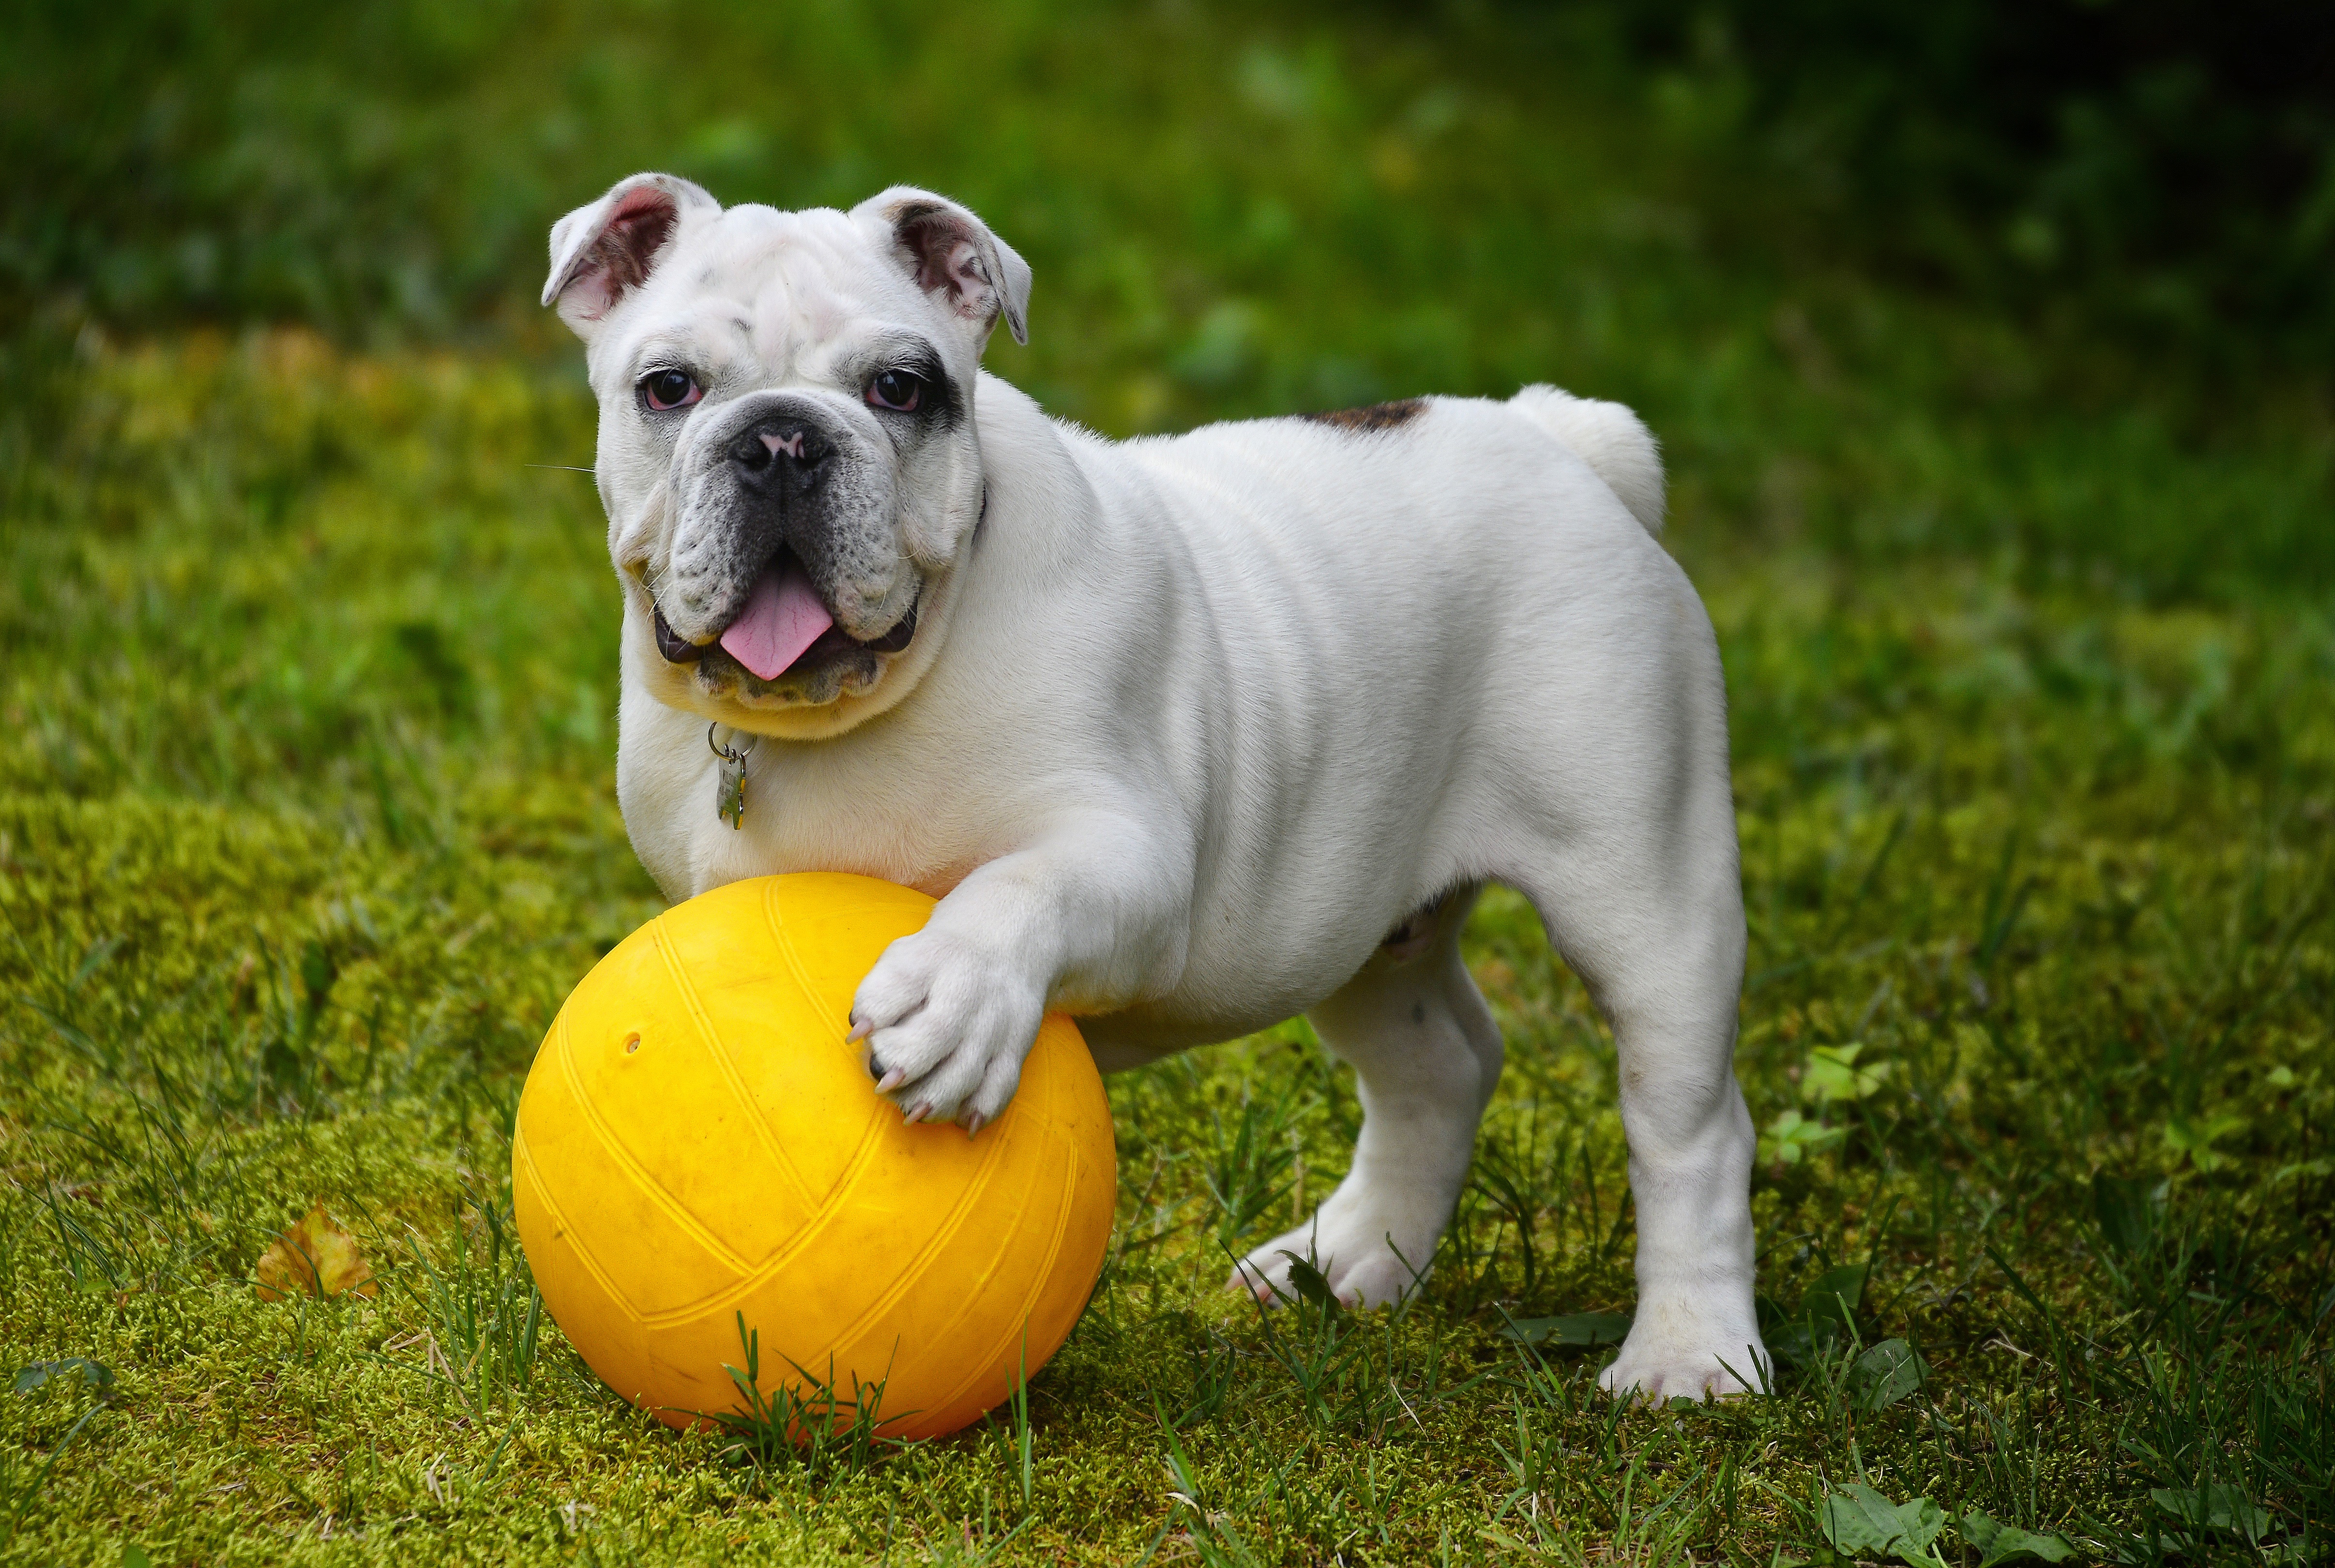 bulldog, funny, animals, dog, ball, protruding tongue, tongue stuck out